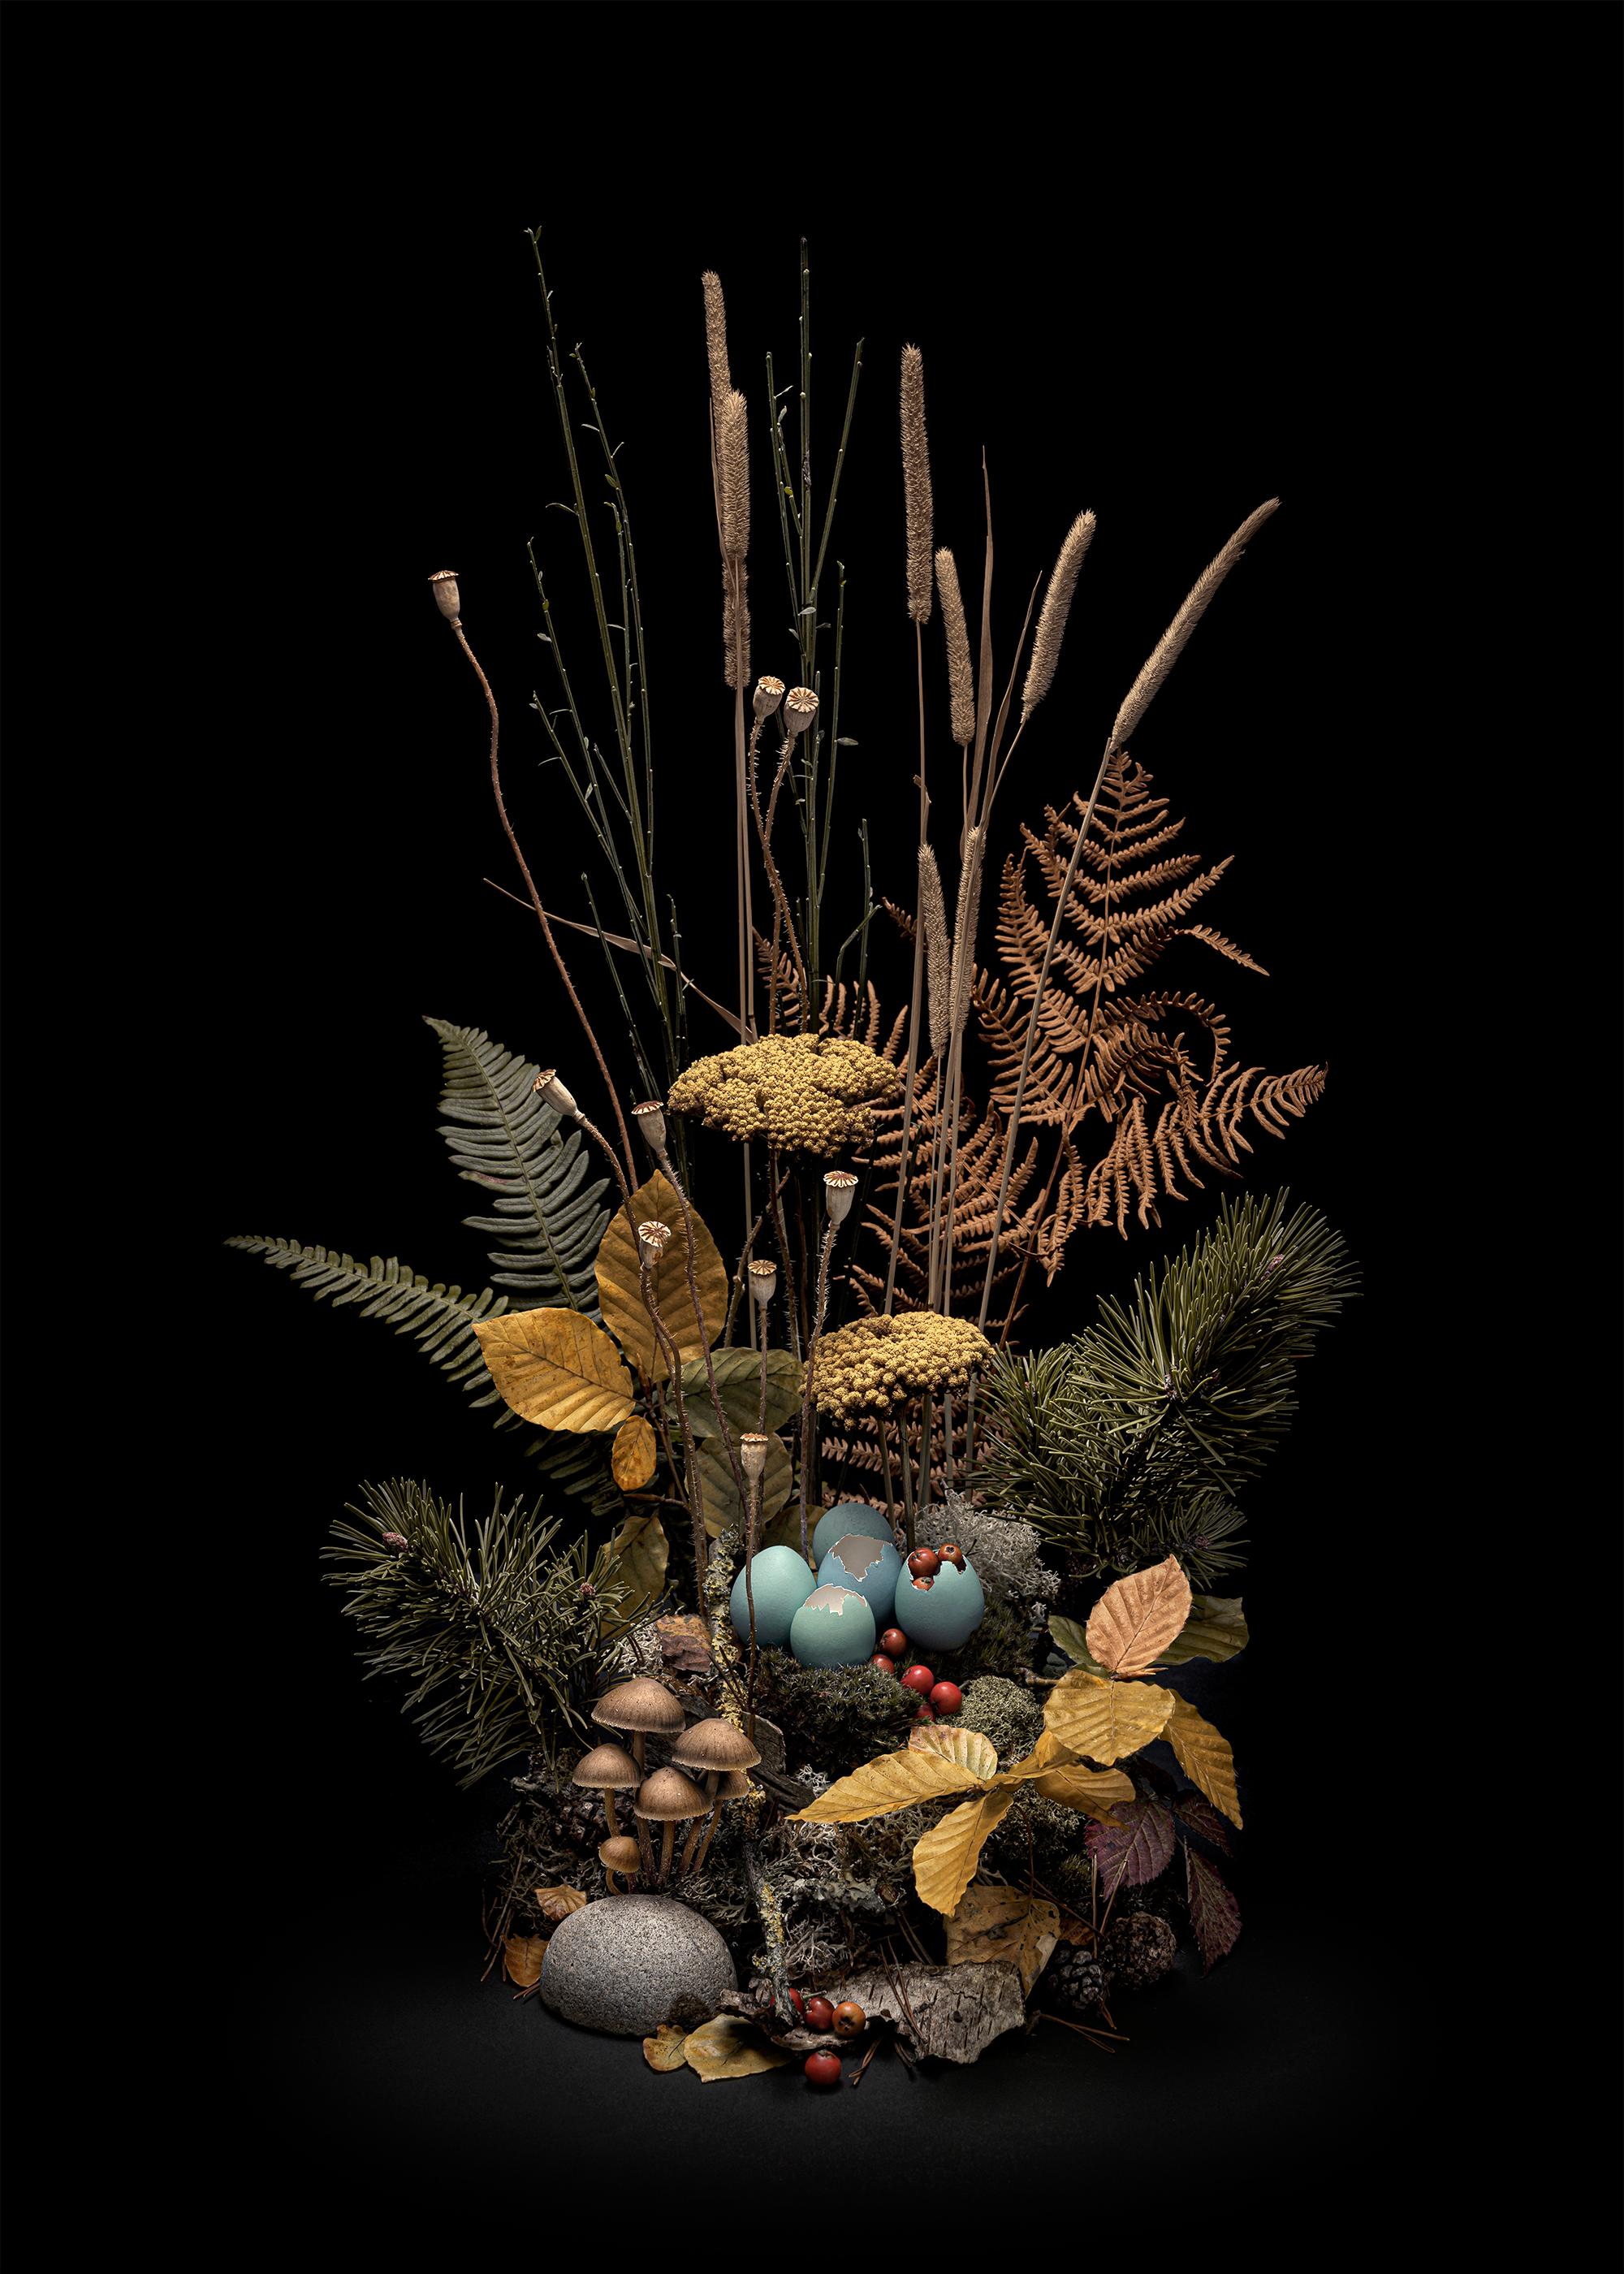 Still-Life Photograph Jasper Goodall - Émeraude Flora Autumn encadrée, arrangement floral de fleurs et de plantes sauvages